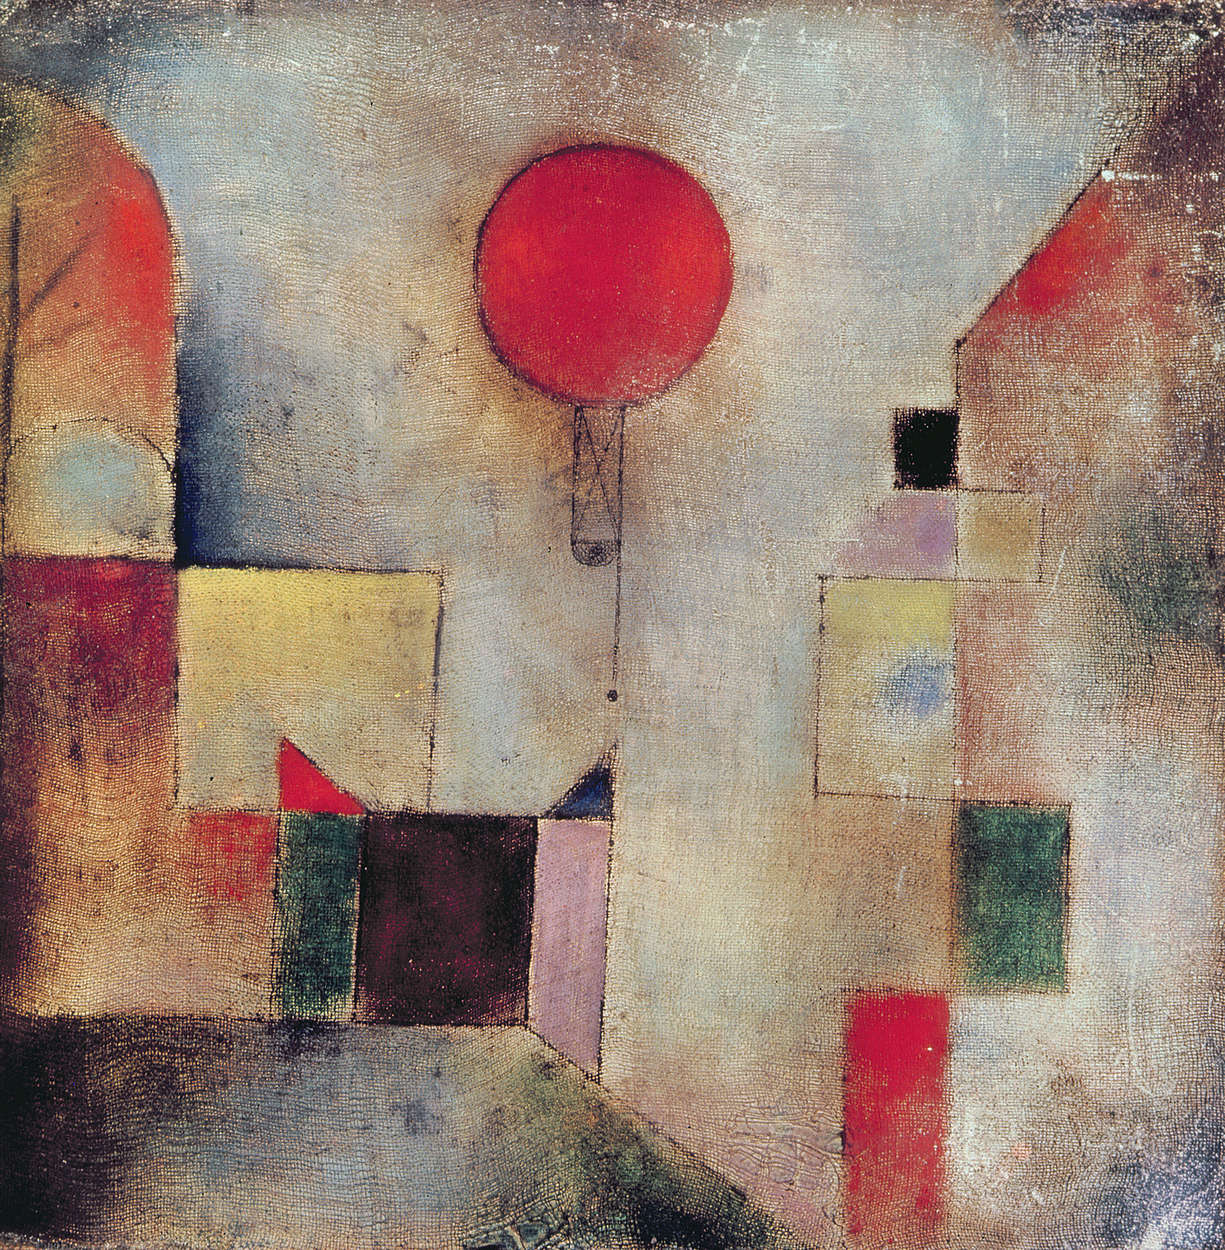             Papier peint panoramique "Ballon rouge" de Paul Klee
        